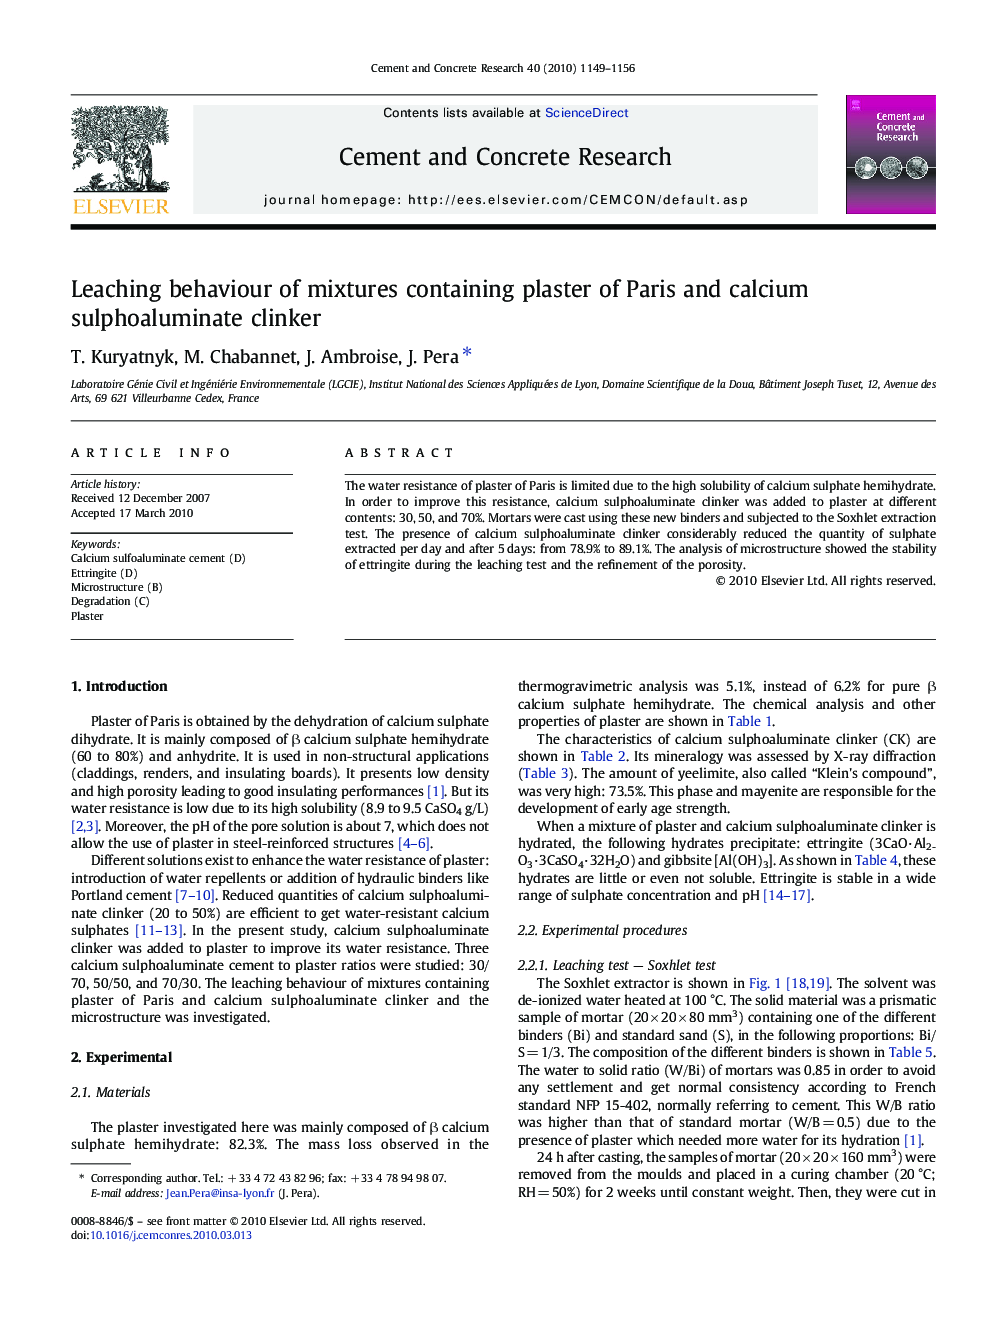 Leaching behaviour of mixtures containing plaster of Paris and calcium sulphoaluminate clinker